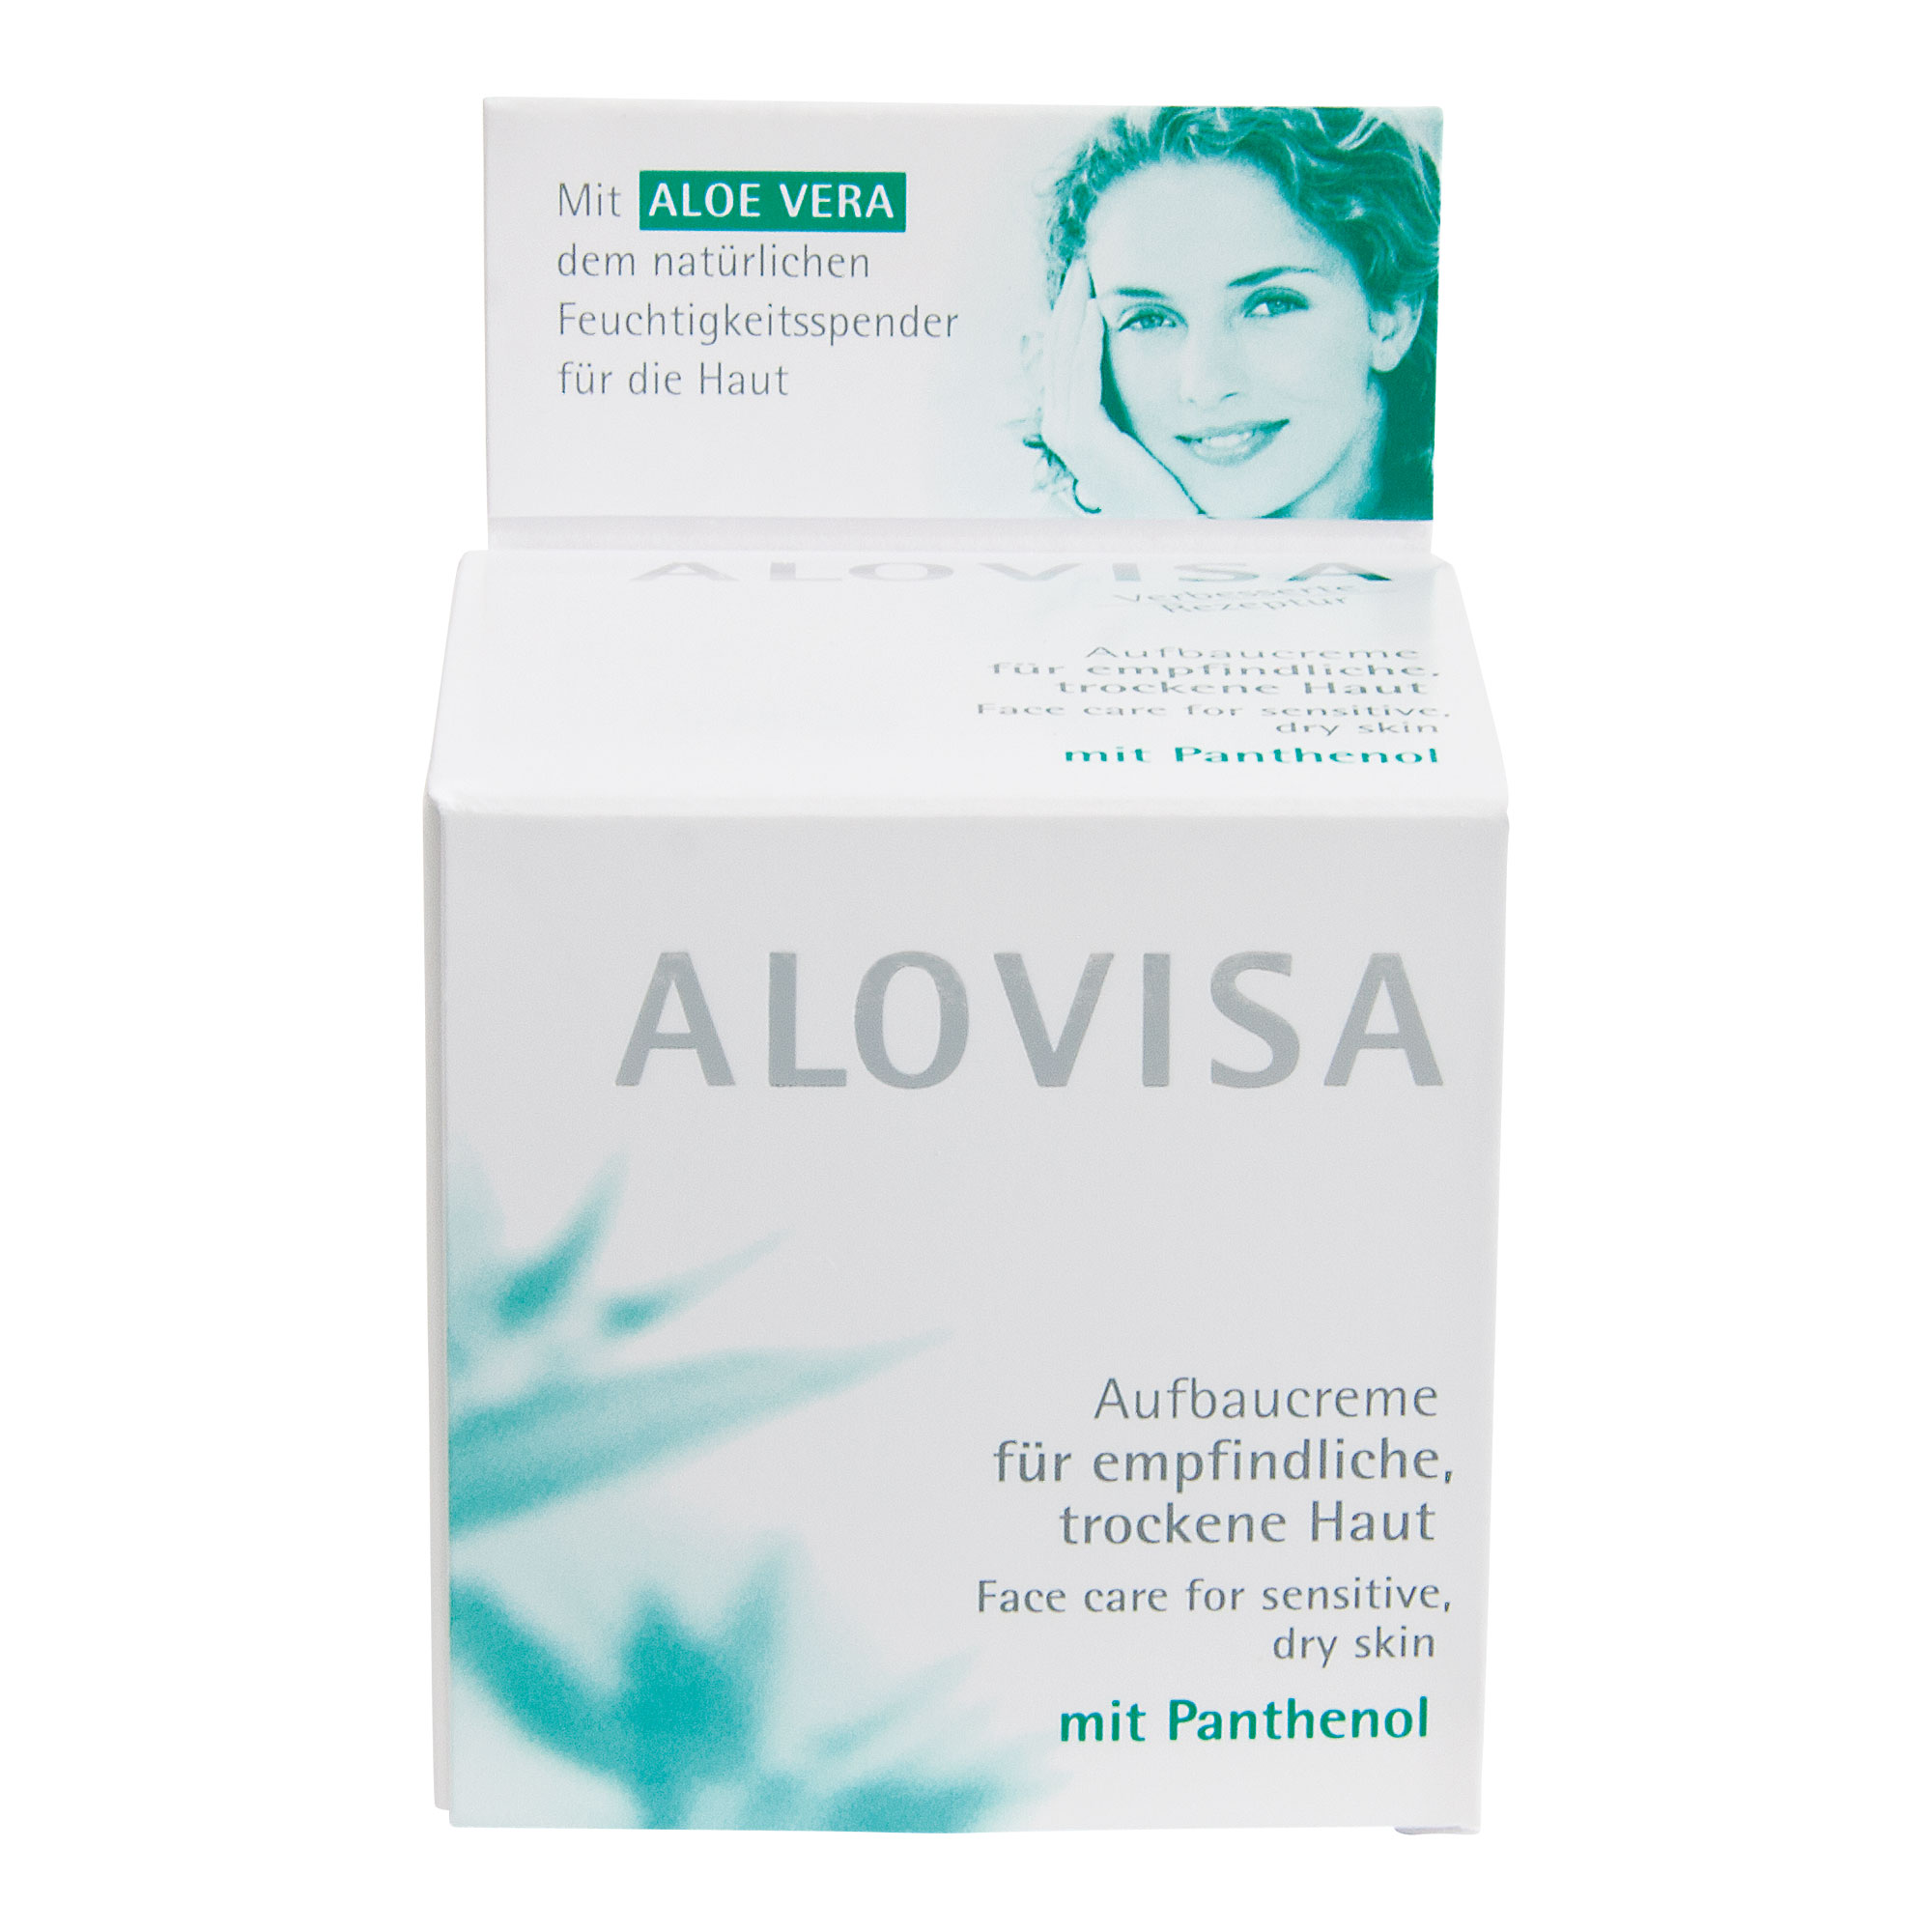 Intensiver Schutz und optimale Pflege trockener, empfindlicher Gesichtshaut. Mit Aloe Vera.